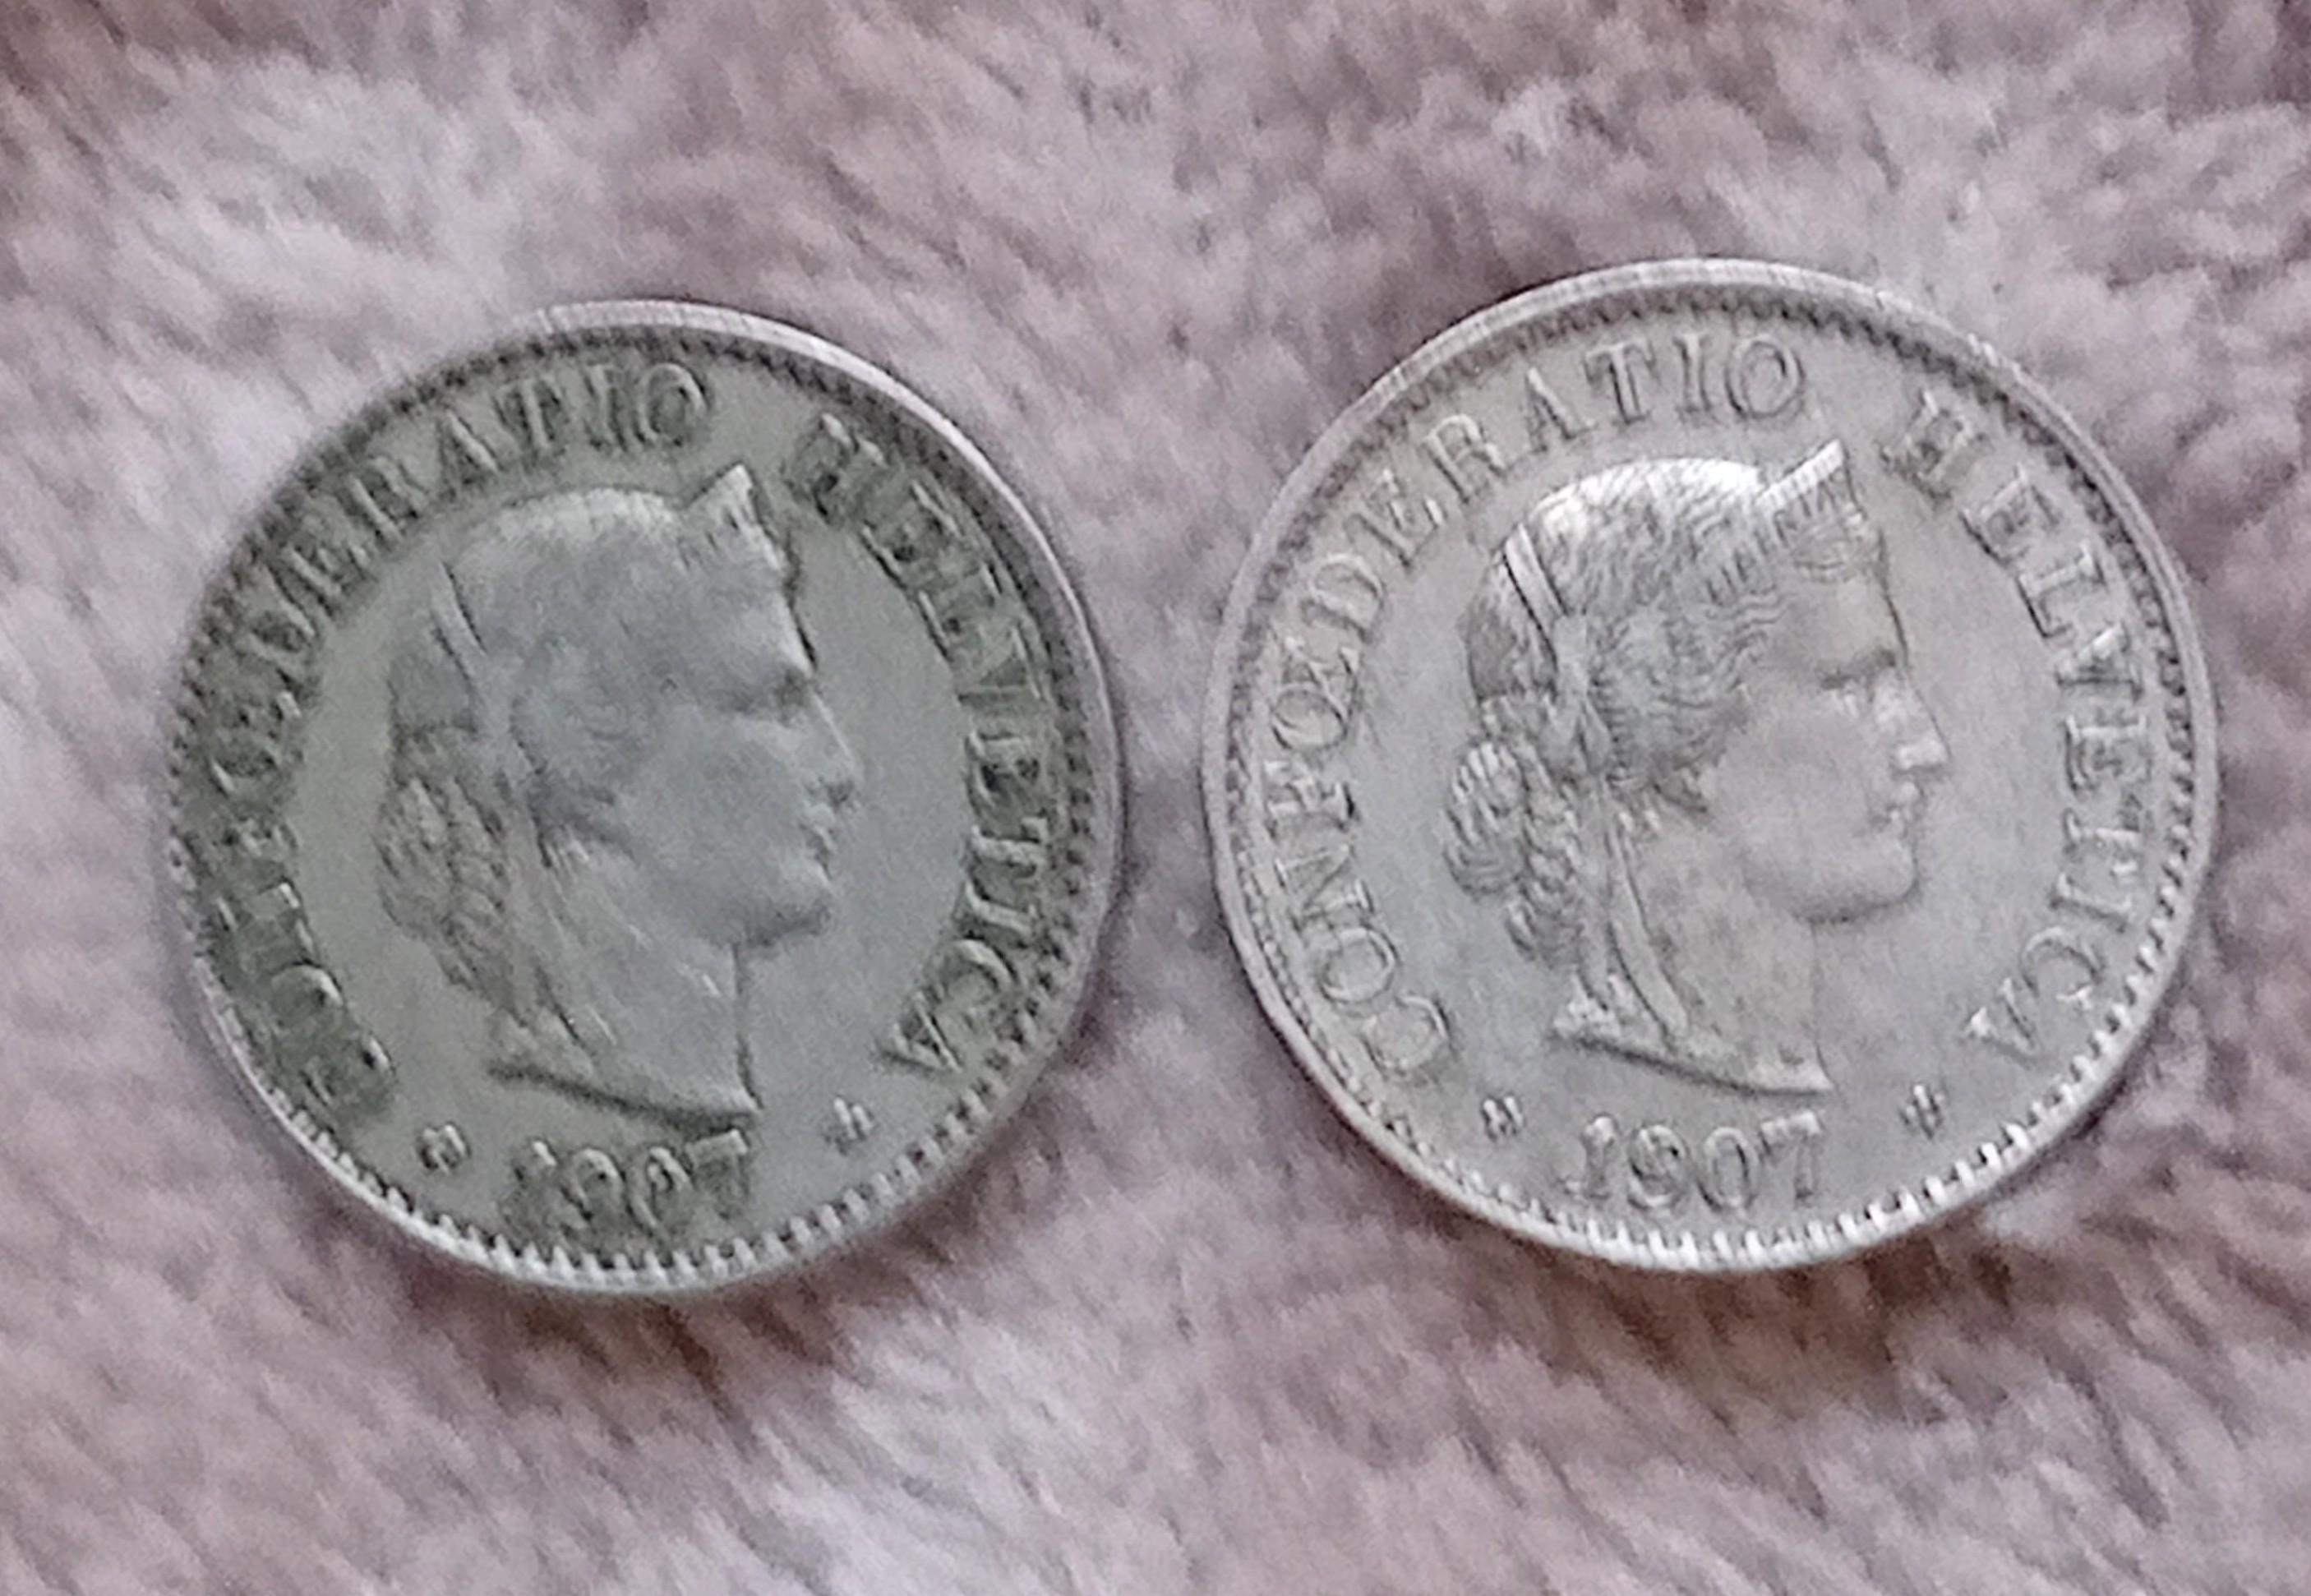 troc de troc reserver. deux pièces de 5 centimes suisses 1907 image 0